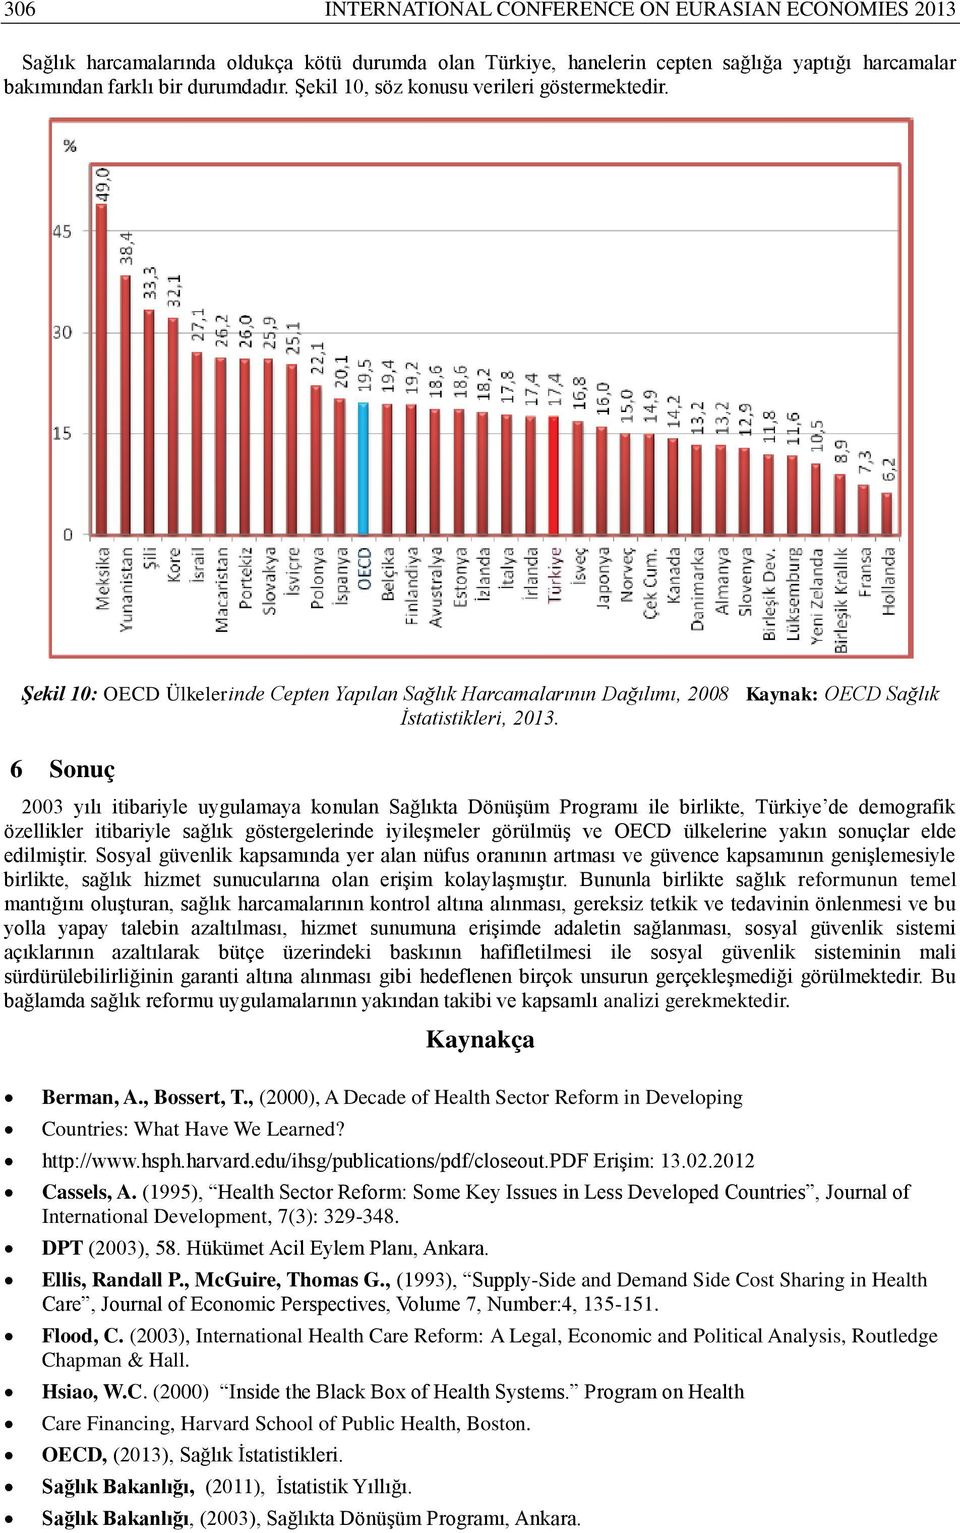 6 Sonuç 2003 yılı itibariyle uygulamaya konulan Sağlıkta Dönüşüm Programı ile birlikte, Türkiye de demografik özellikler itibariyle sağlık göstergelerinde iyileşmeler görülmüş ve OECD ülkelerine